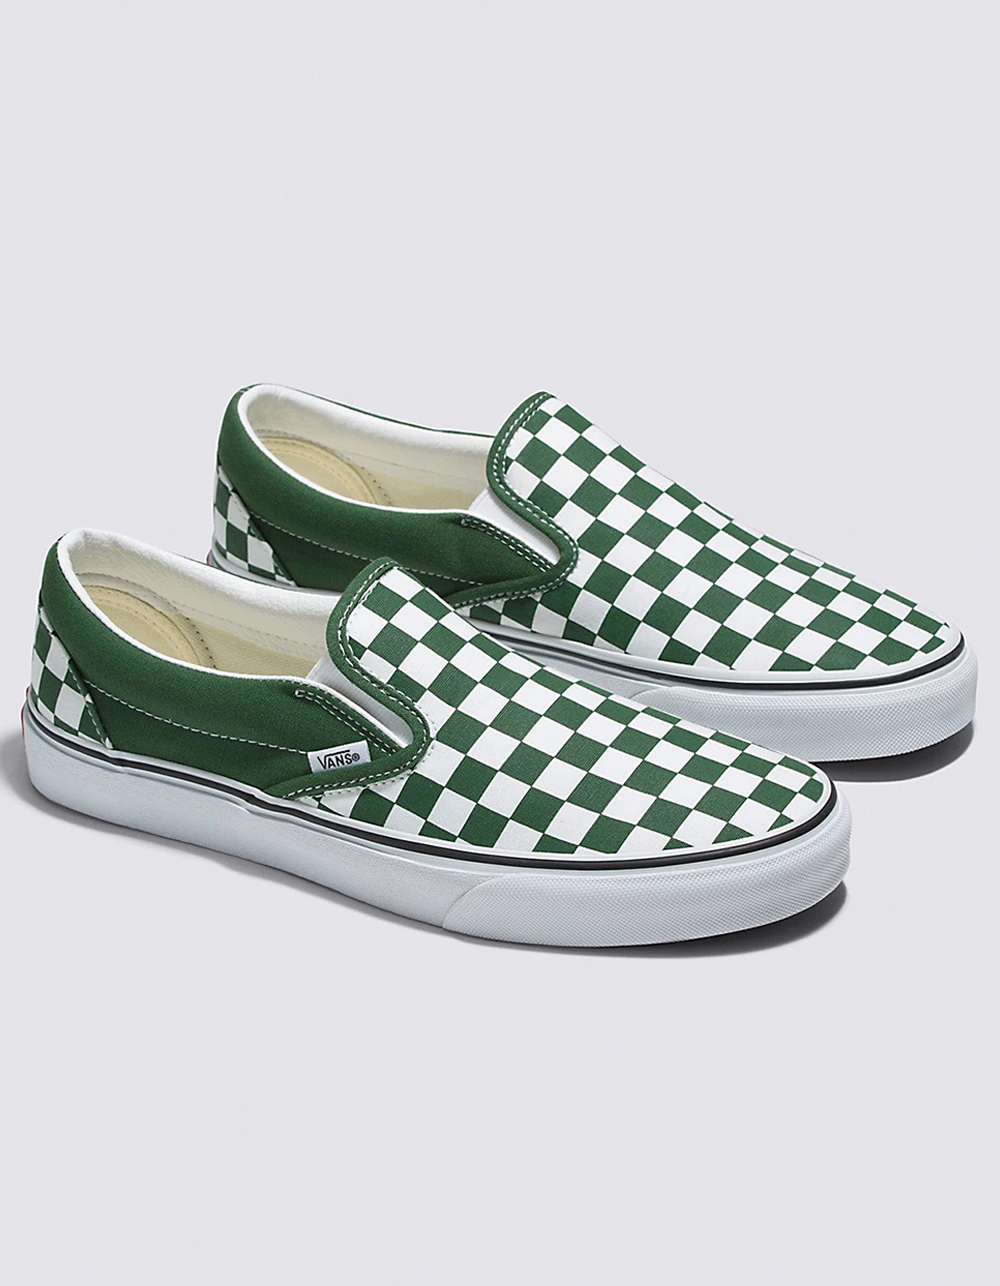 Green Checkered Vans Slip ons - Youth Size 2 blog.knak.jp